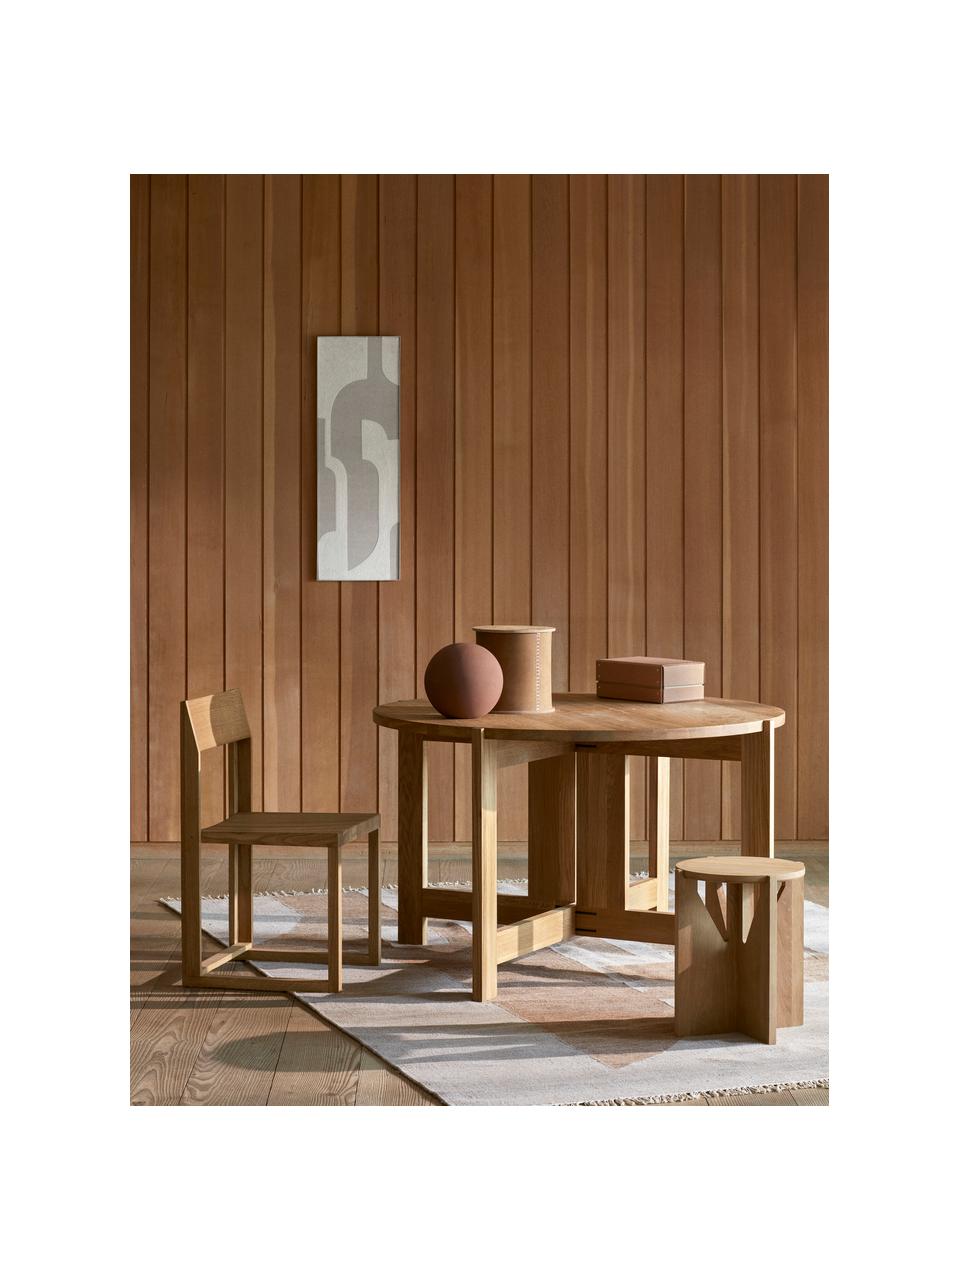 Holzstuhl Outline aus Eichenholz, Eichenholz, geölt, FSC-zertifiziert, Eichenholz, B 46 x T 46 cm